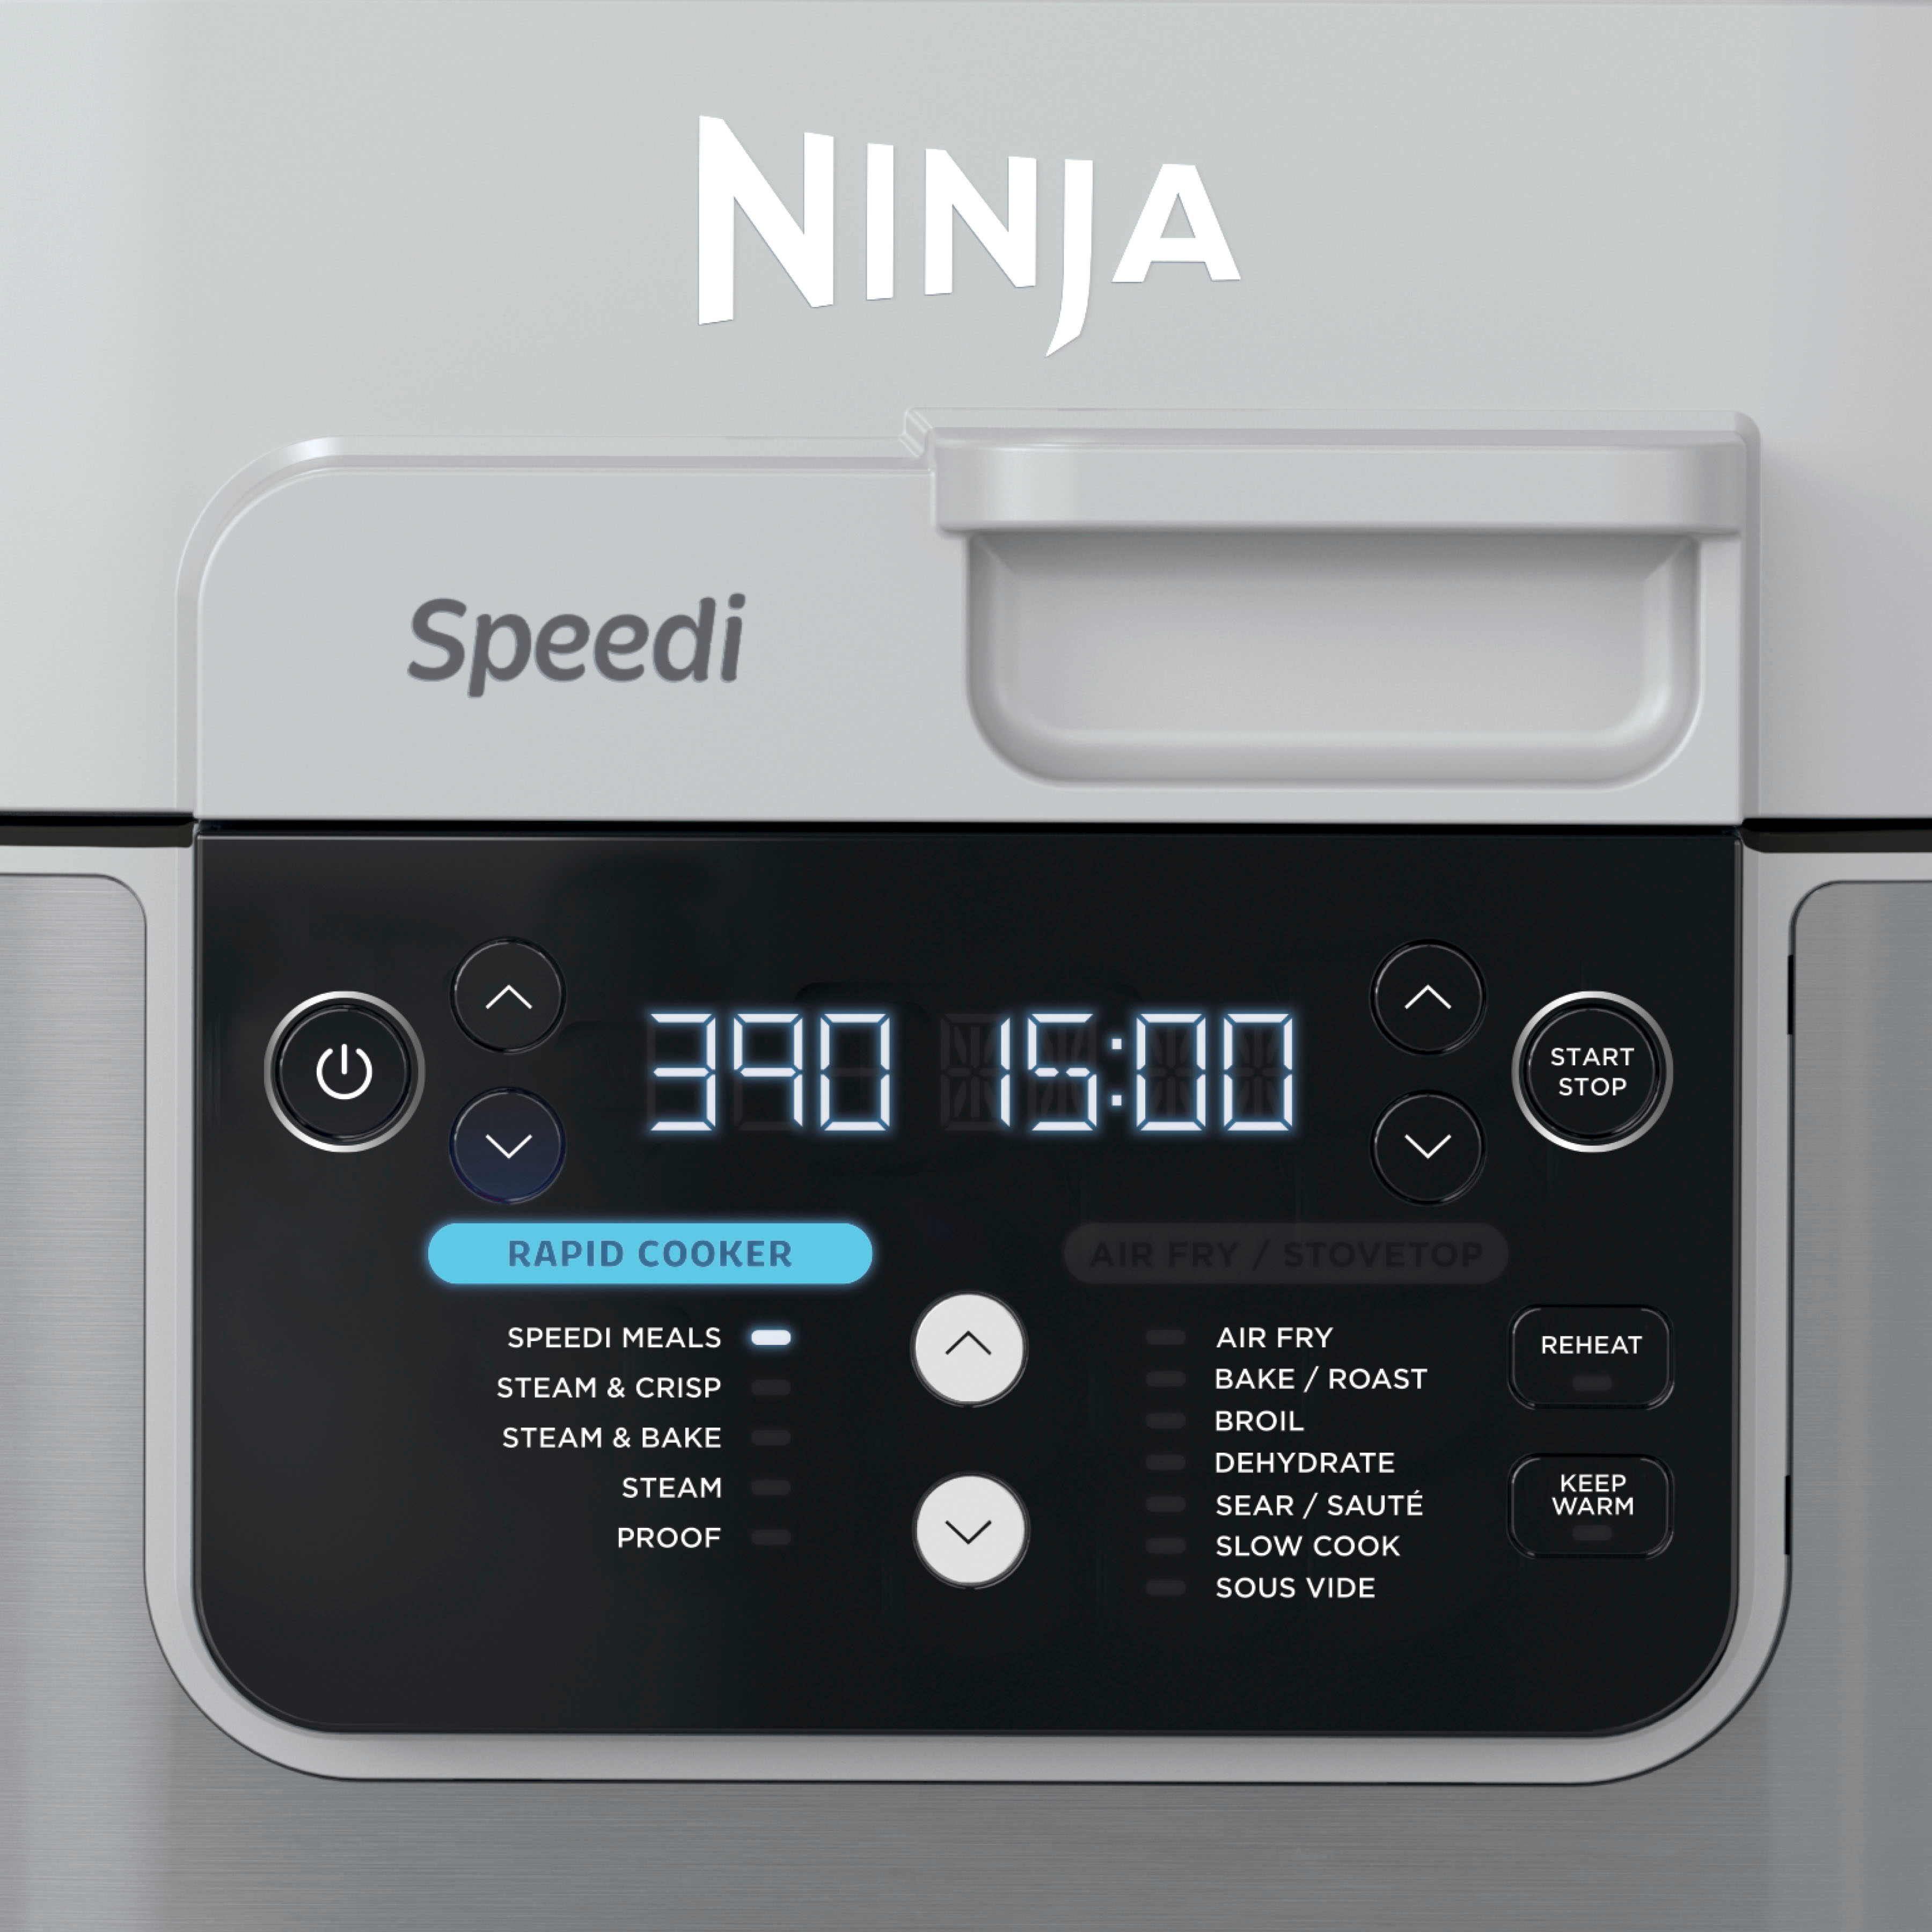 Solved: Ninja Speedi Rapid Cooker- Today's Big Deal - Blogs & Forums